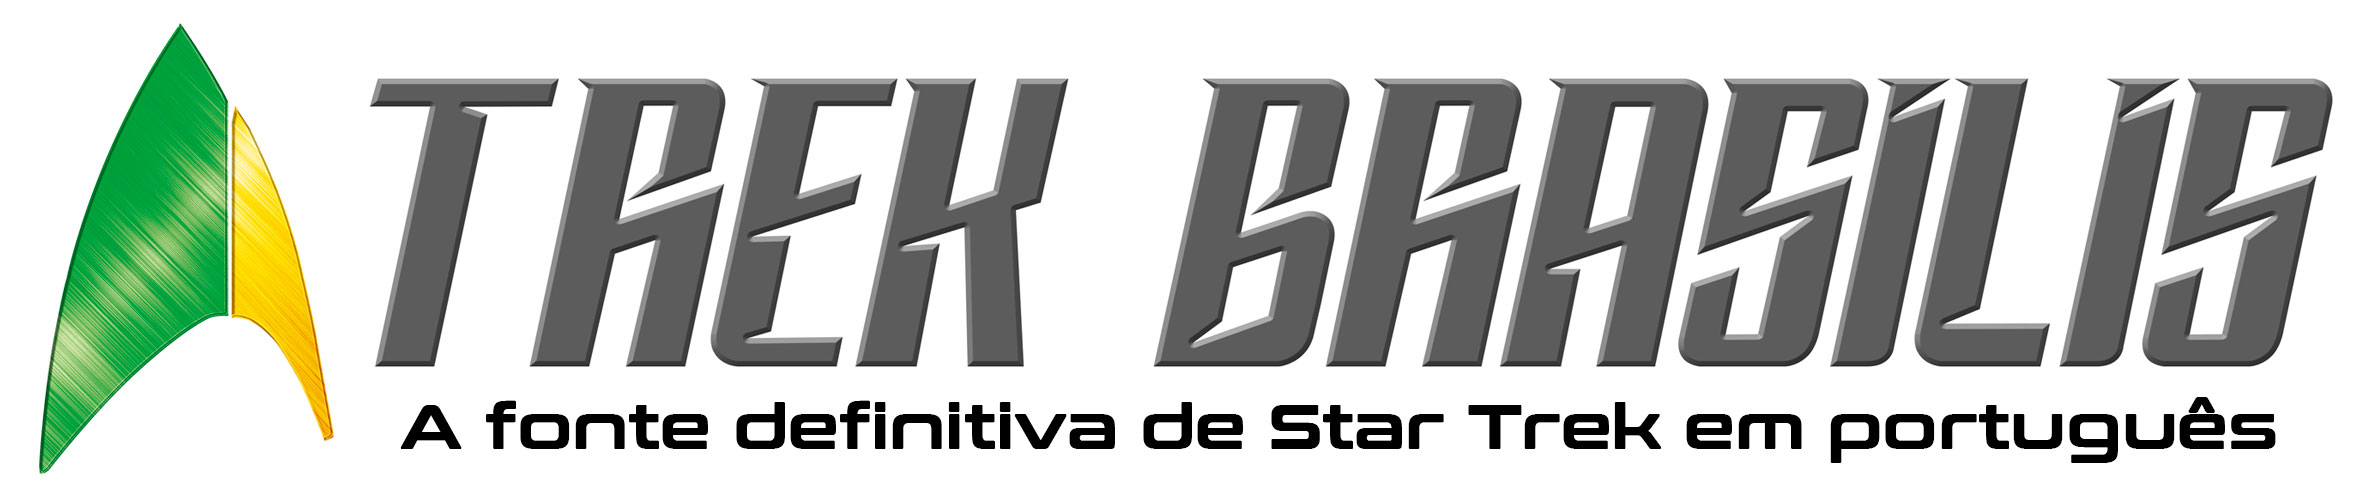 Bastidores de Discovery com elenco e produção - Trek Brasilis - A fonte  definitiva de Star Trek (Jornada nas Estrelas) em português